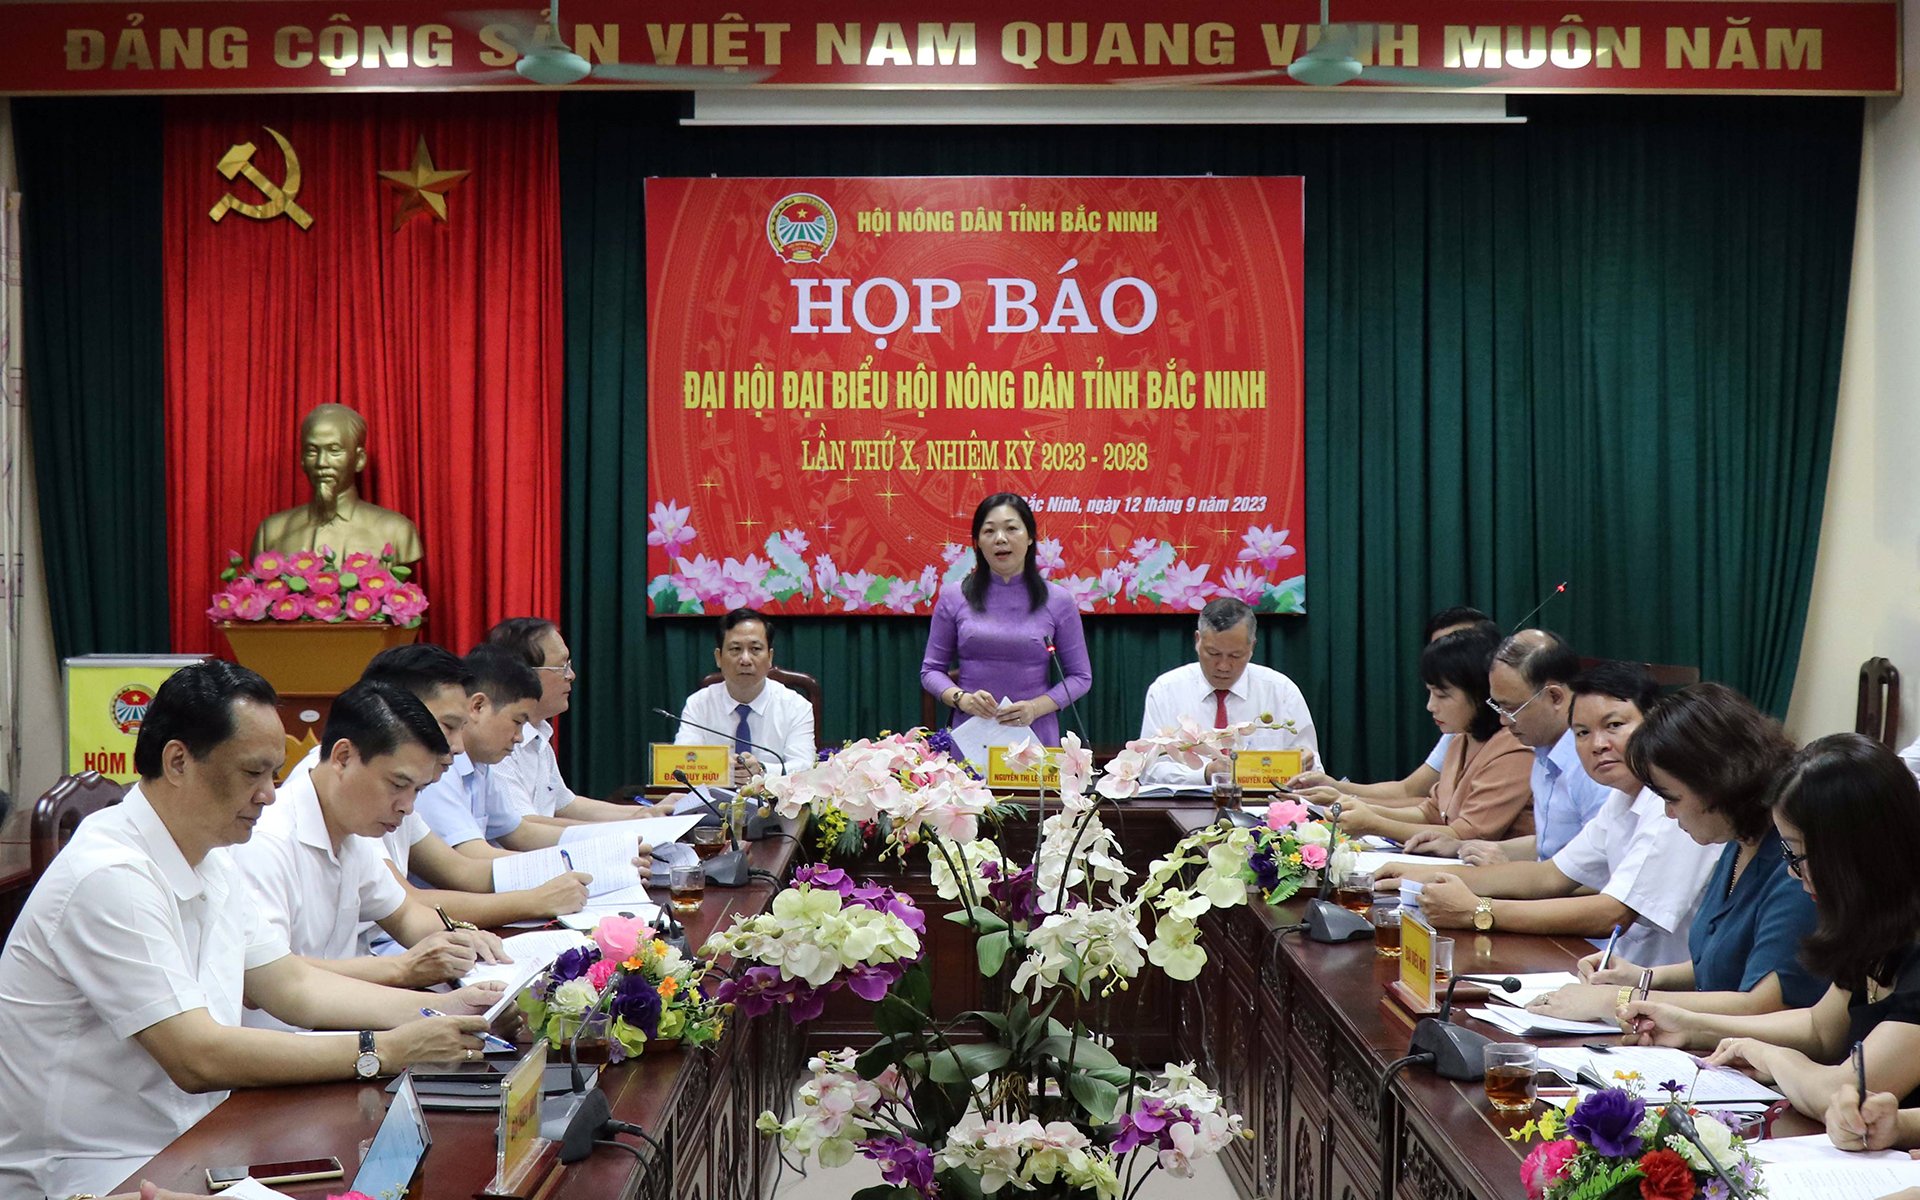 Bà Nguyễn Thị Lệ Tuyết, Chủ tịch Hội Nông dân tỉnh Bắc Ninh chủ trì buổi họp báo giới thiệu Đại hội đại biểu Hội Nông dân tỉnh Bắc Ninh lần thứ X.